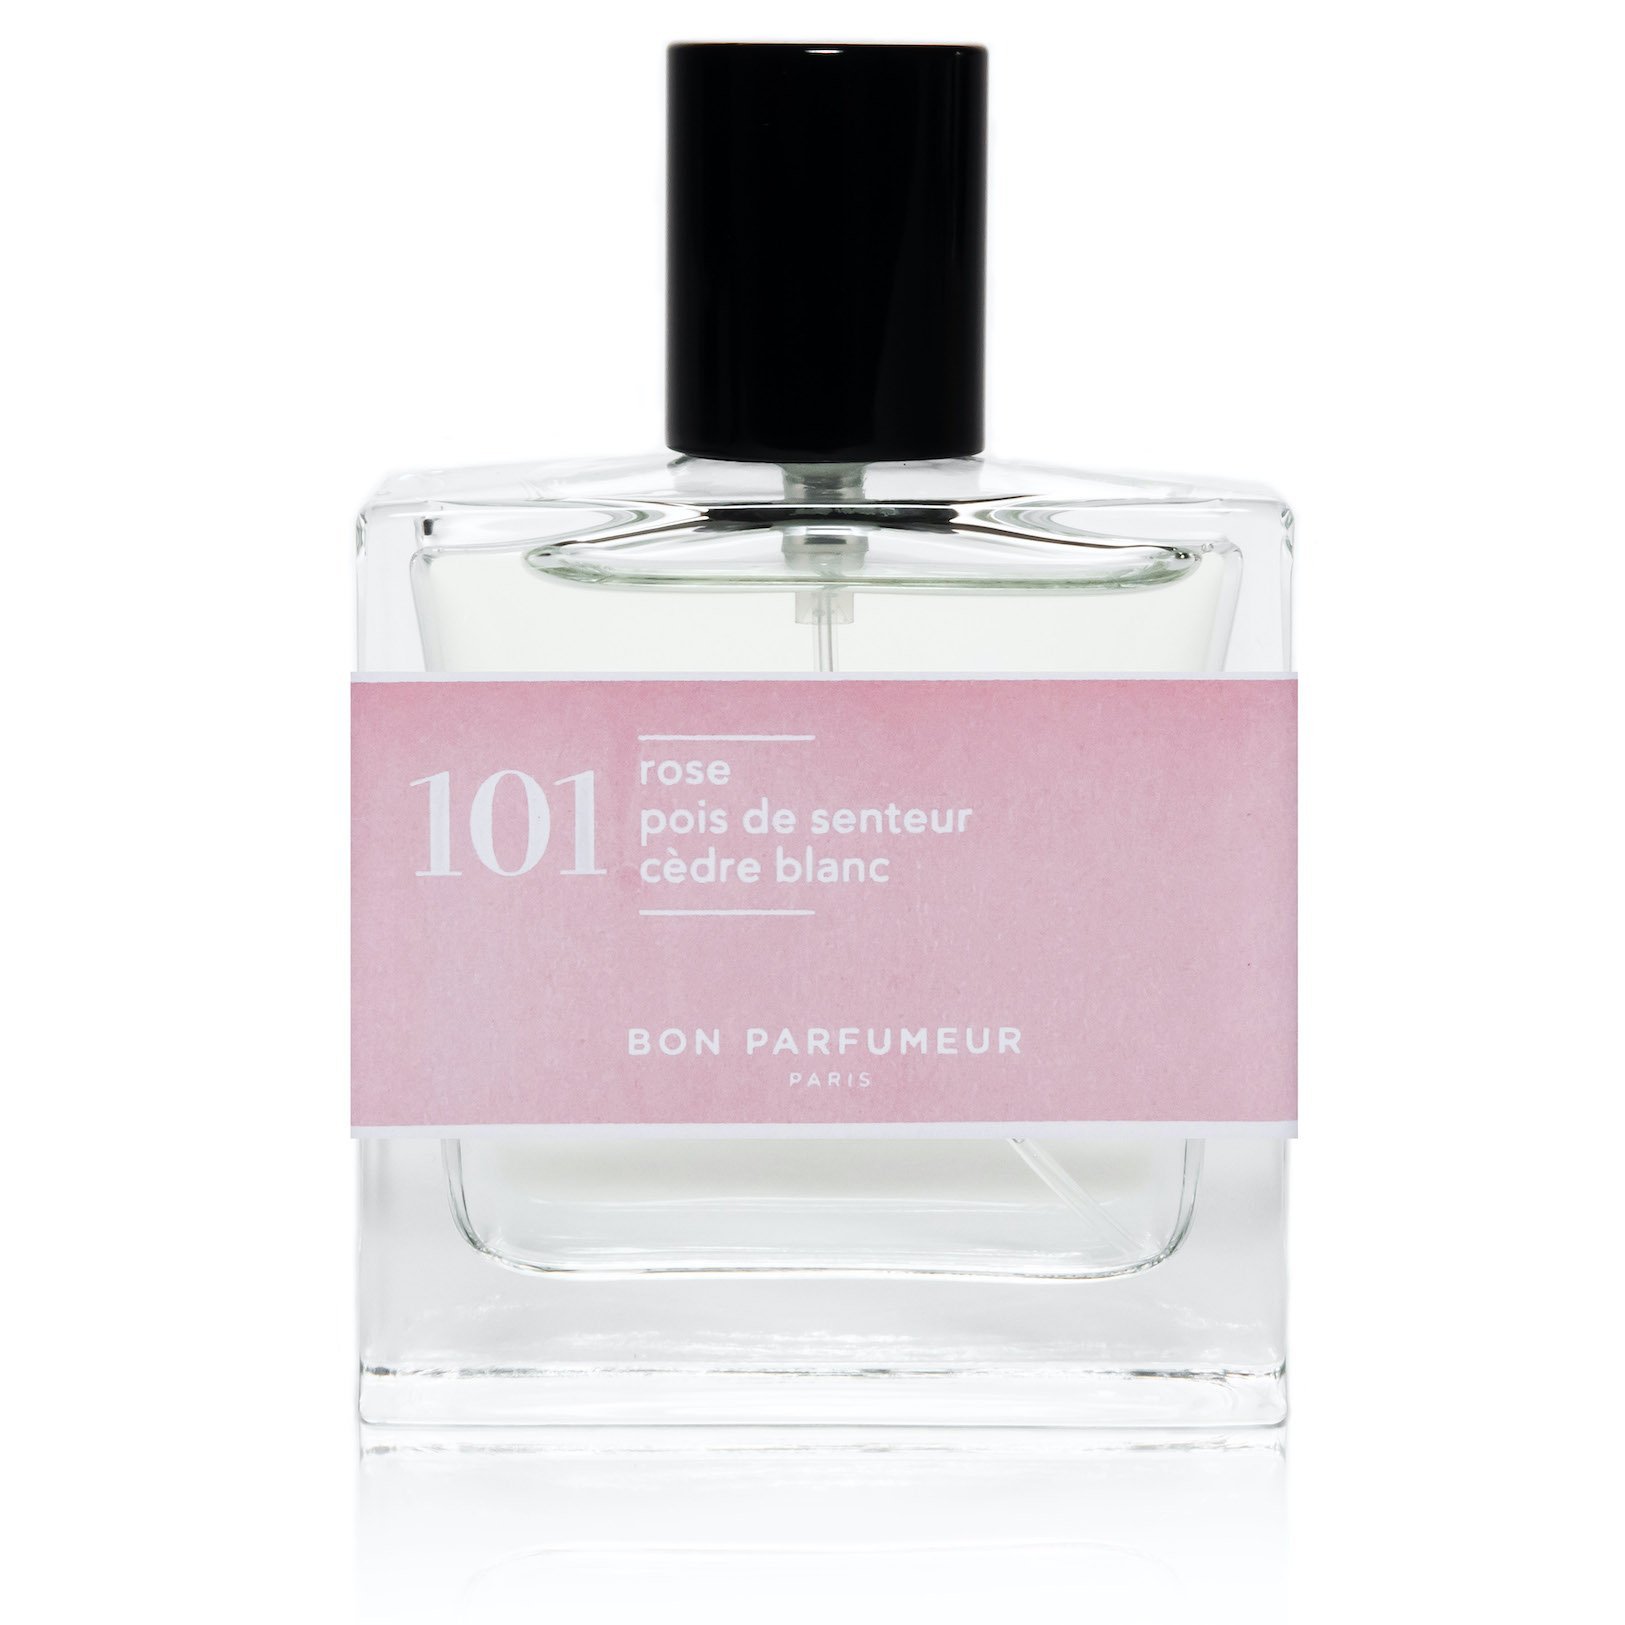 Bon Parfumeur 30 ml Eau De Parfum 101 Rose, Sweet Pea and White Cedar